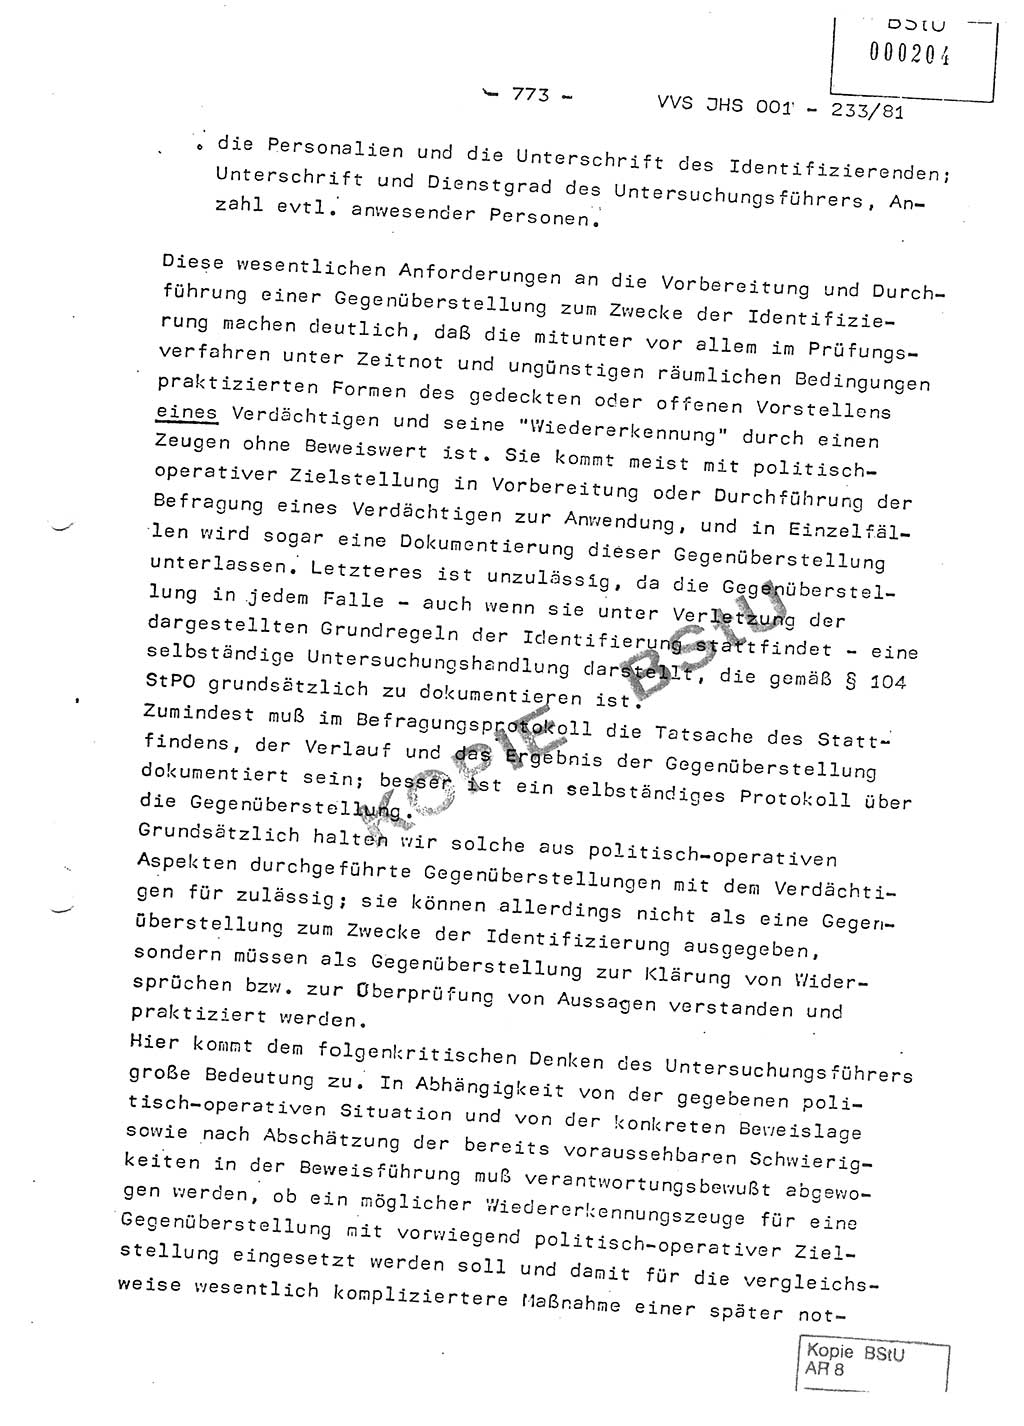 Dissertation Oberstleutnant Horst Zank (JHS), Oberstleutnant Dr. Karl-Heinz Knoblauch (JHS), Oberstleutnant Gustav-Adolf Kowalewski (HA Ⅸ), Oberstleutnant Wolfgang Plötner (HA Ⅸ), Ministerium für Staatssicherheit (MfS) [Deutsche Demokratische Republik (DDR)], Juristische Hochschule (JHS), Vertrauliche Verschlußsache (VVS) o001-233/81, Potsdam 1981, Blatt 773 (Diss. MfS DDR JHS VVS o001-233/81 1981, Bl. 773)